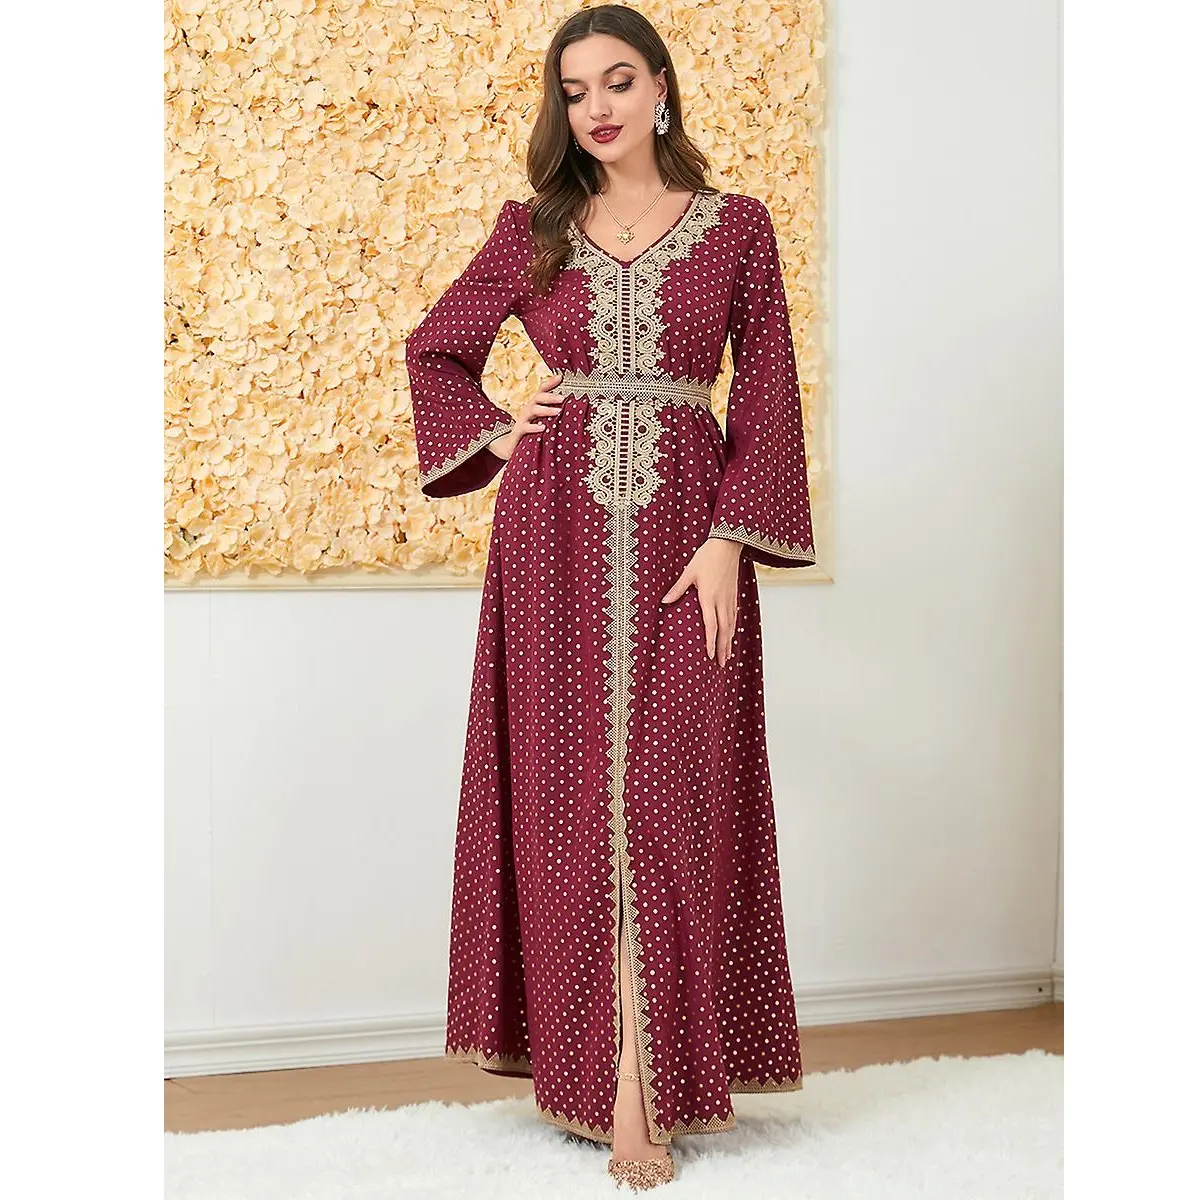 Dubai caftano Georgette rosso nuove donne musulmane arabo caftano islamico Maxi vestito manica lunga arabo Jilbab Abaya all'ingrosso da Indi